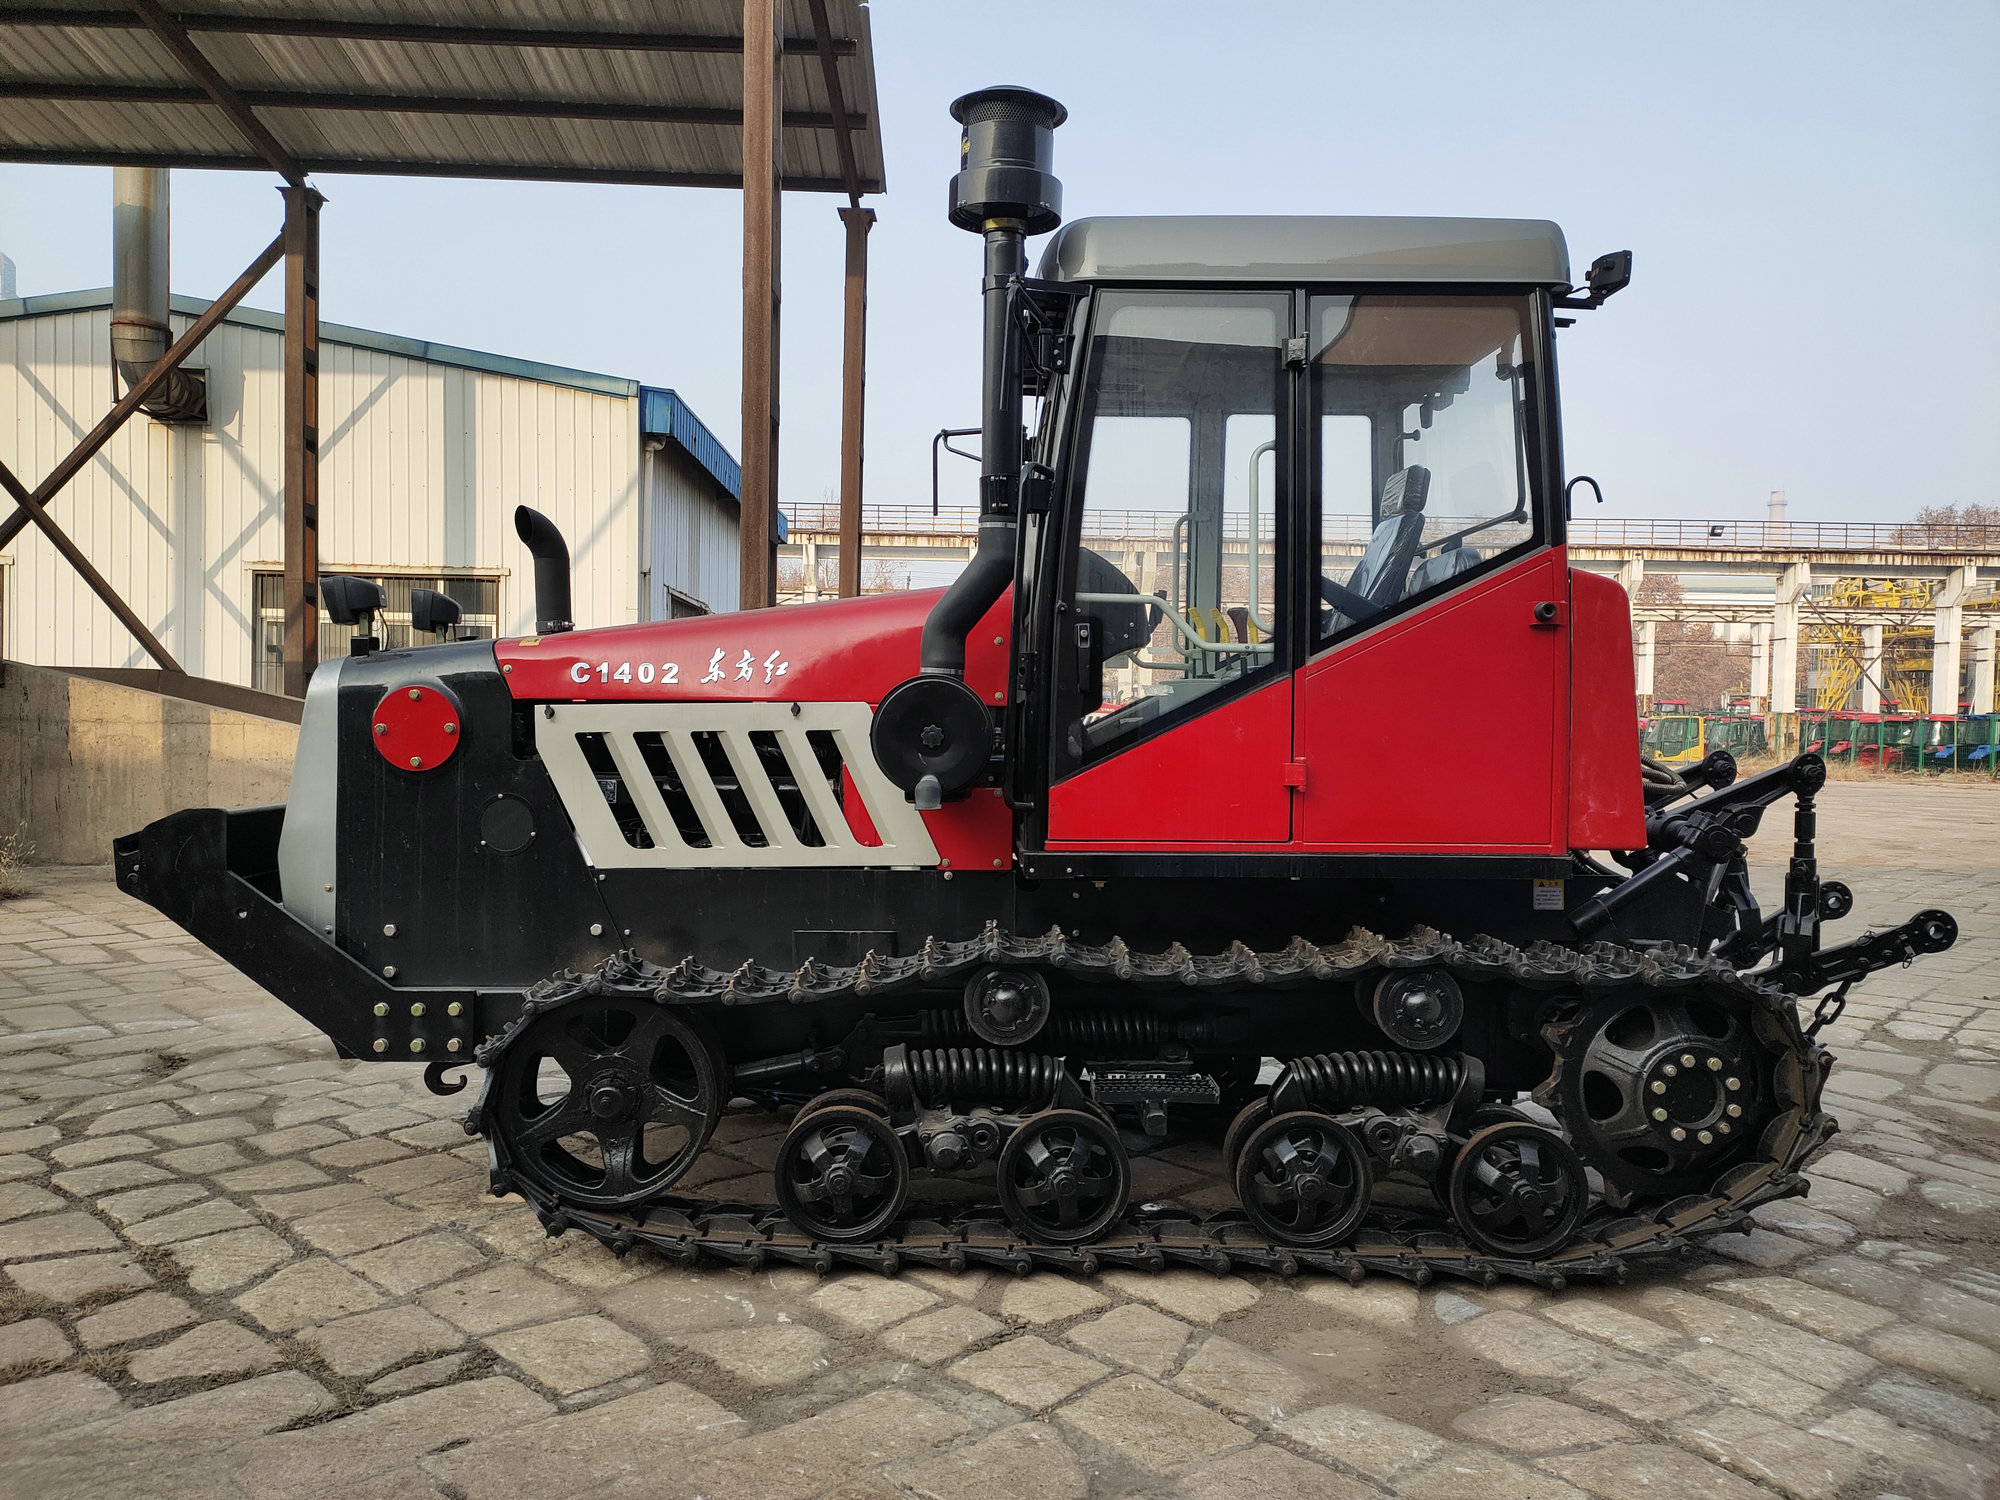 中国一拖·东方红c1402(g4)履带式拖拉机,官方披露的配置